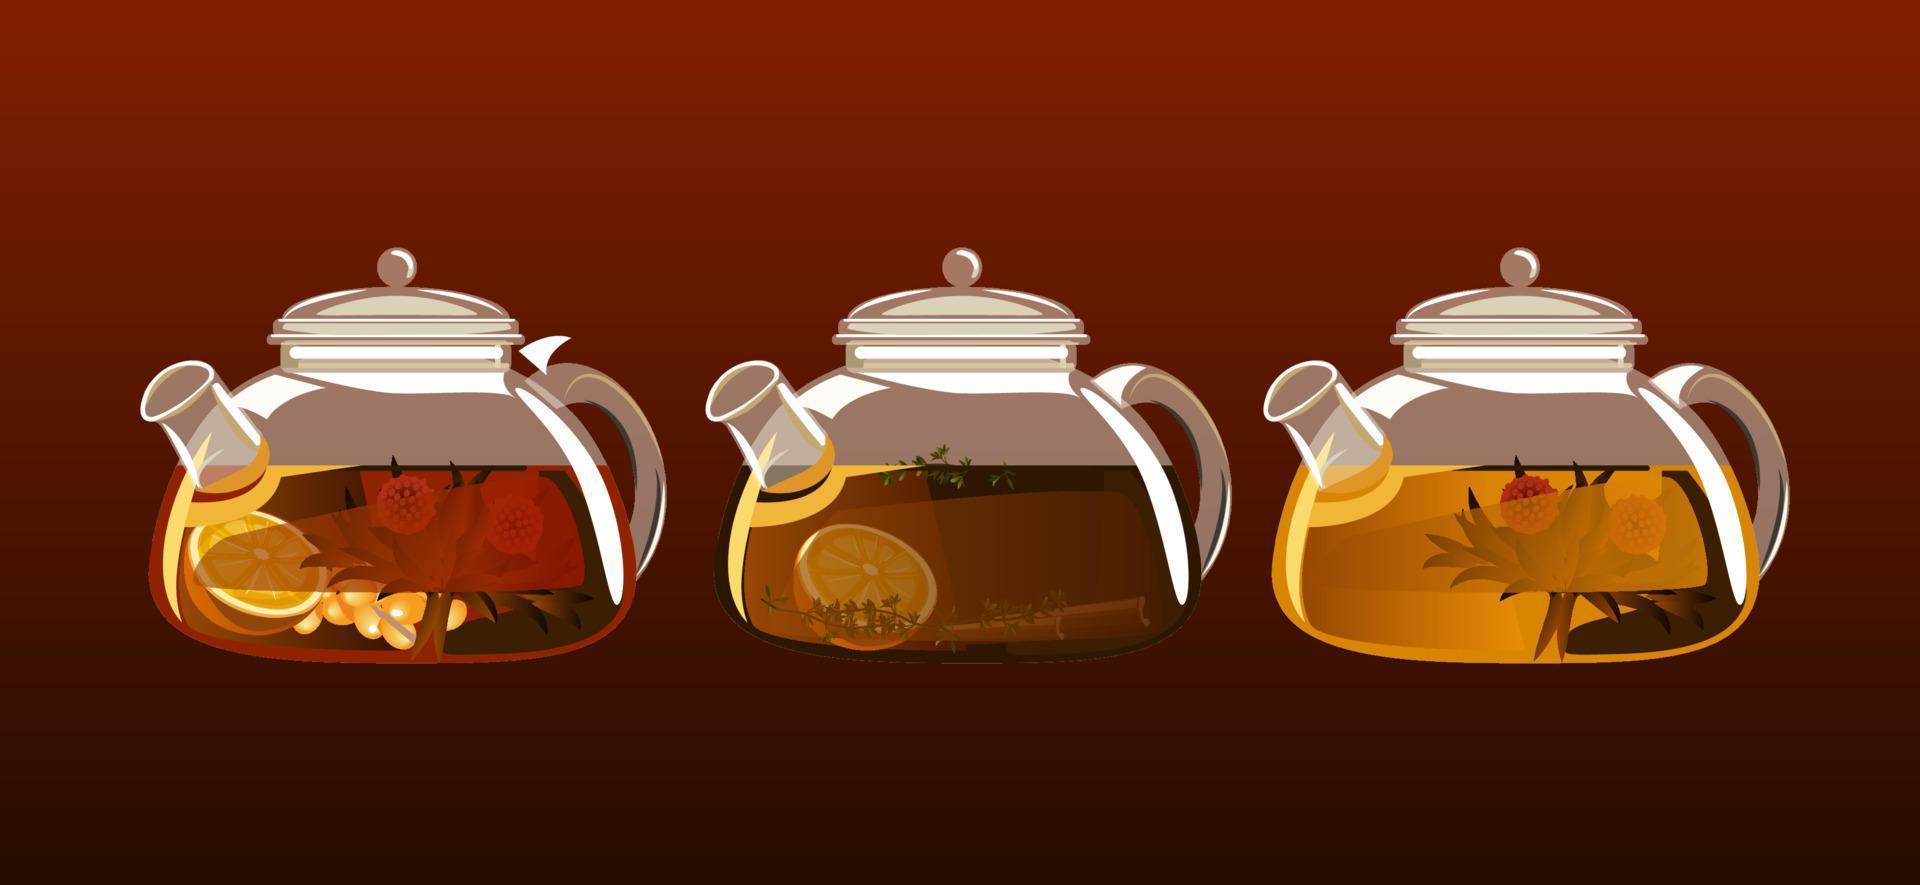 waterkoker met de thee set. exotisch groen thee met bloemen in glas theepot. vector illustratie.